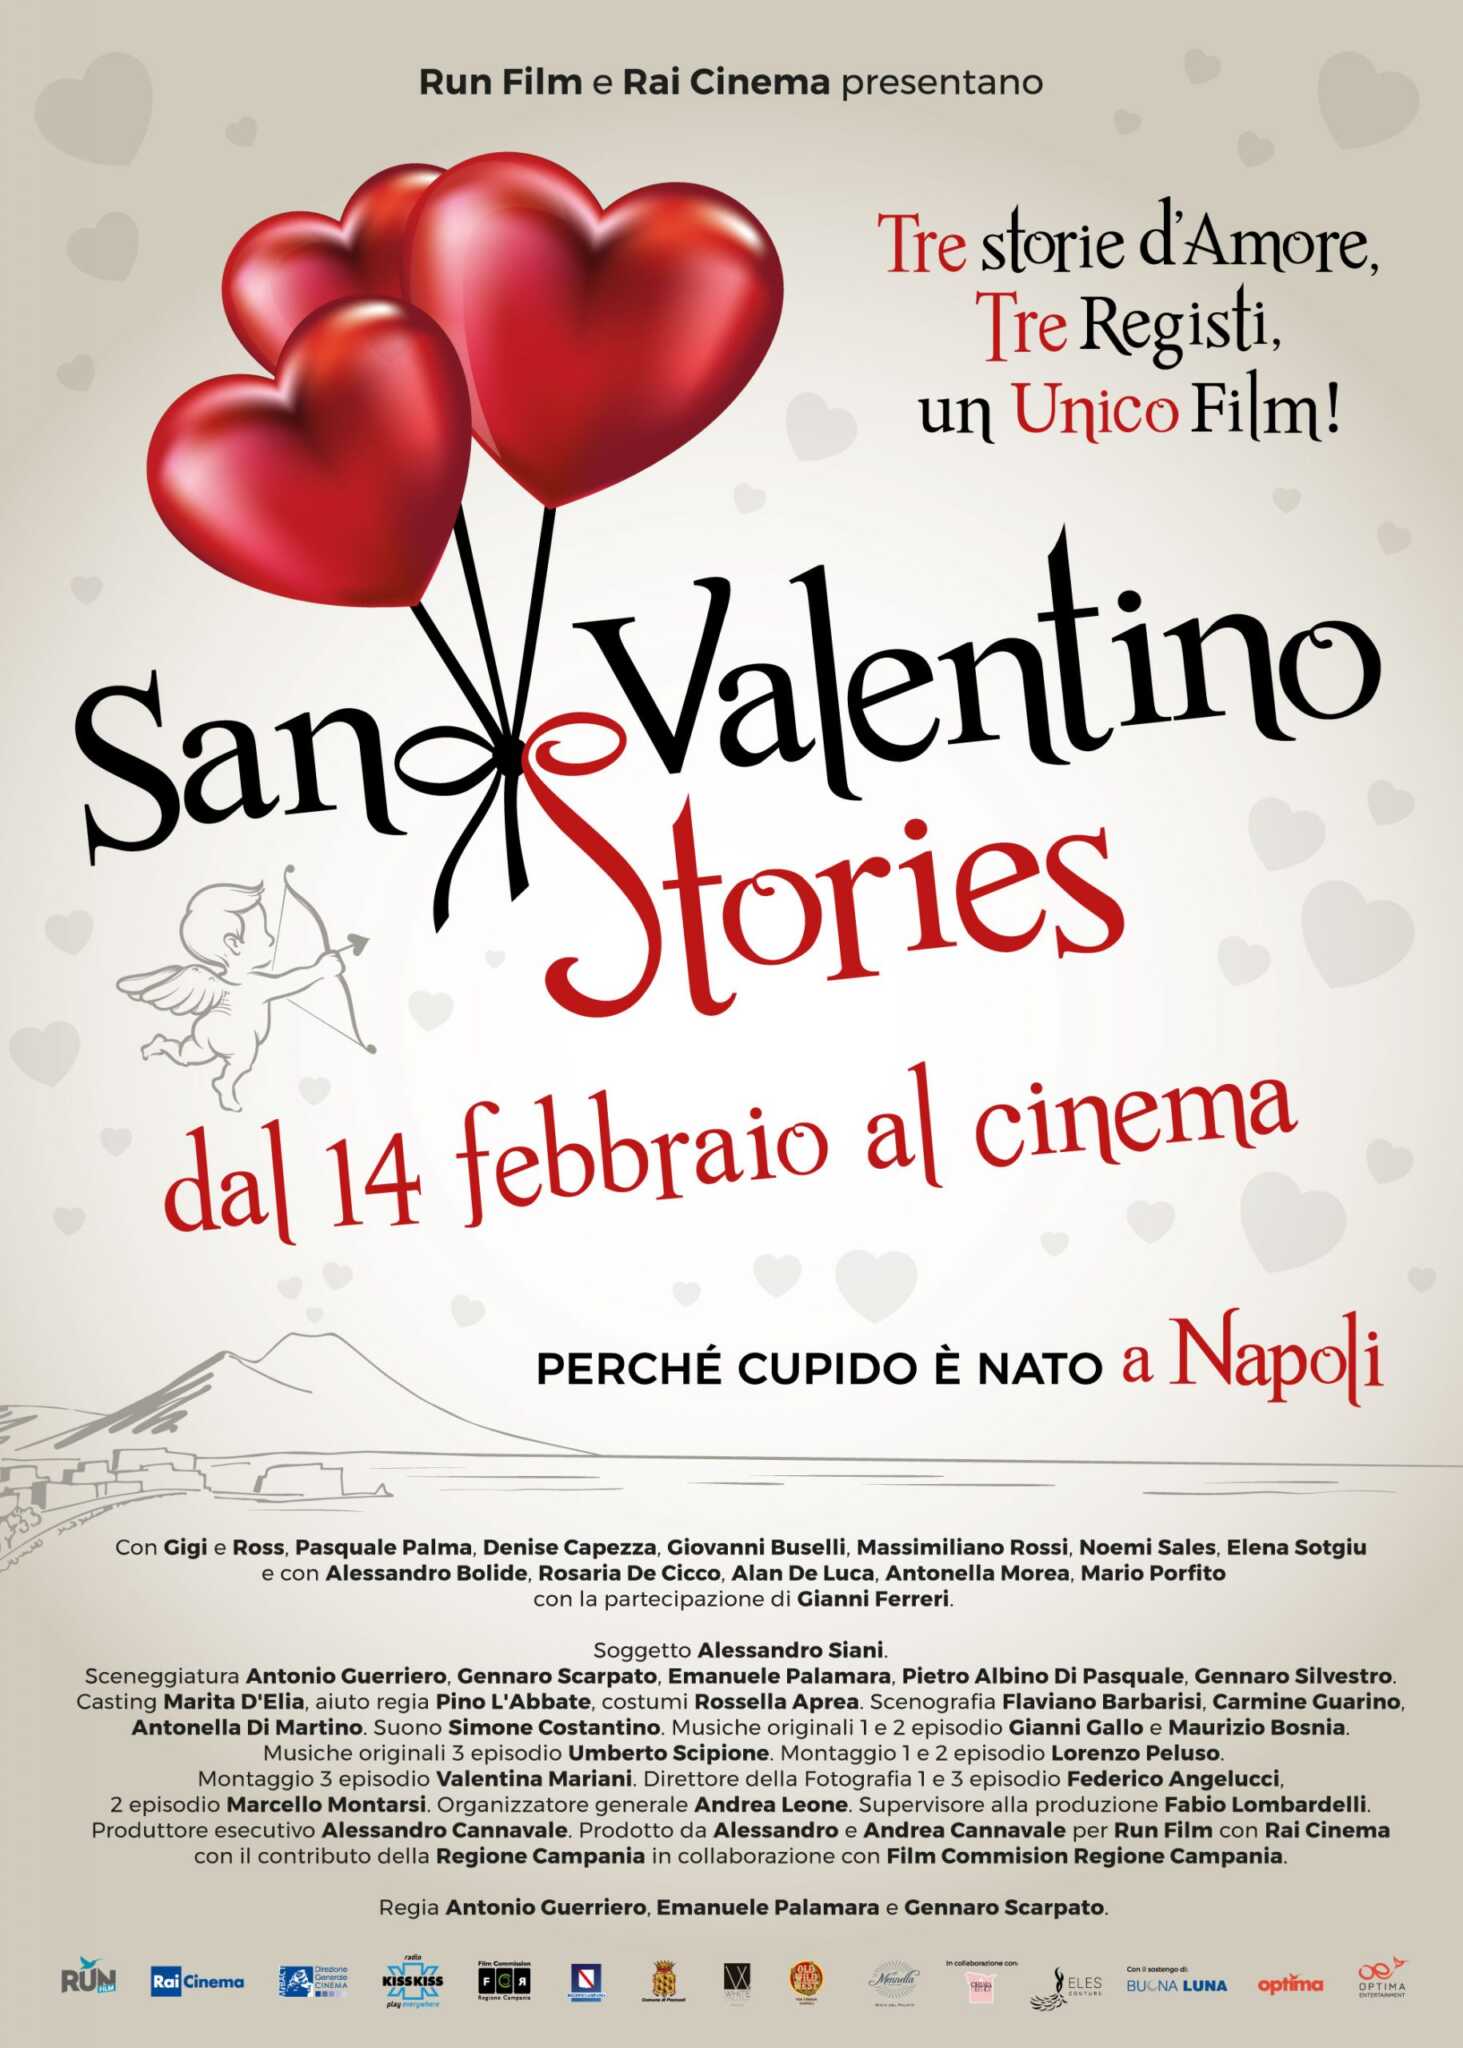 San Valentino Sotries: un film in tre episodi dal 14 febbraio al cinema